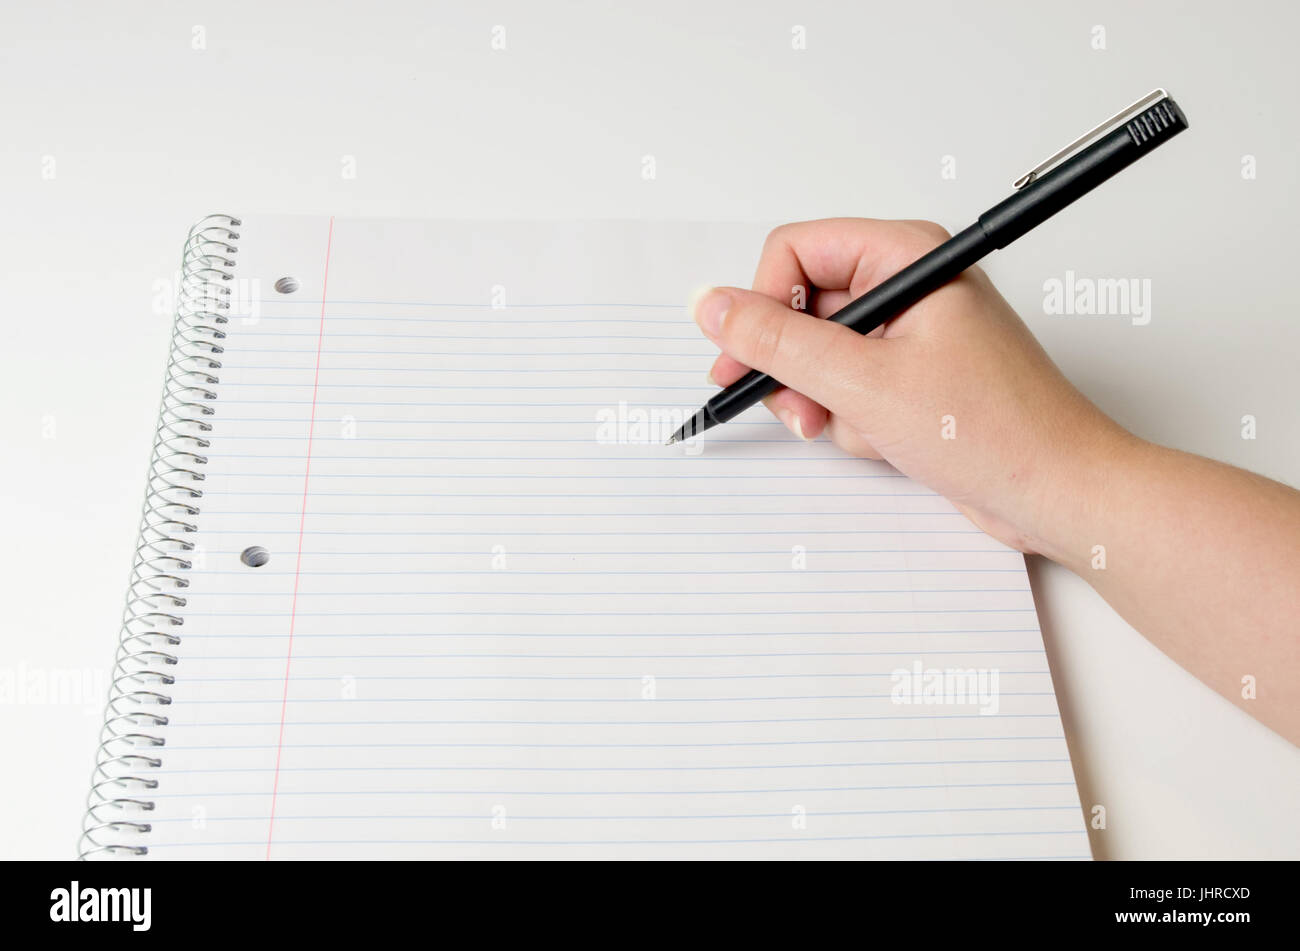 Stylo encre tenir la main, prêt à écrire sur des feuilles de carnet d'ordinateur portable en spirales Banque D'Images